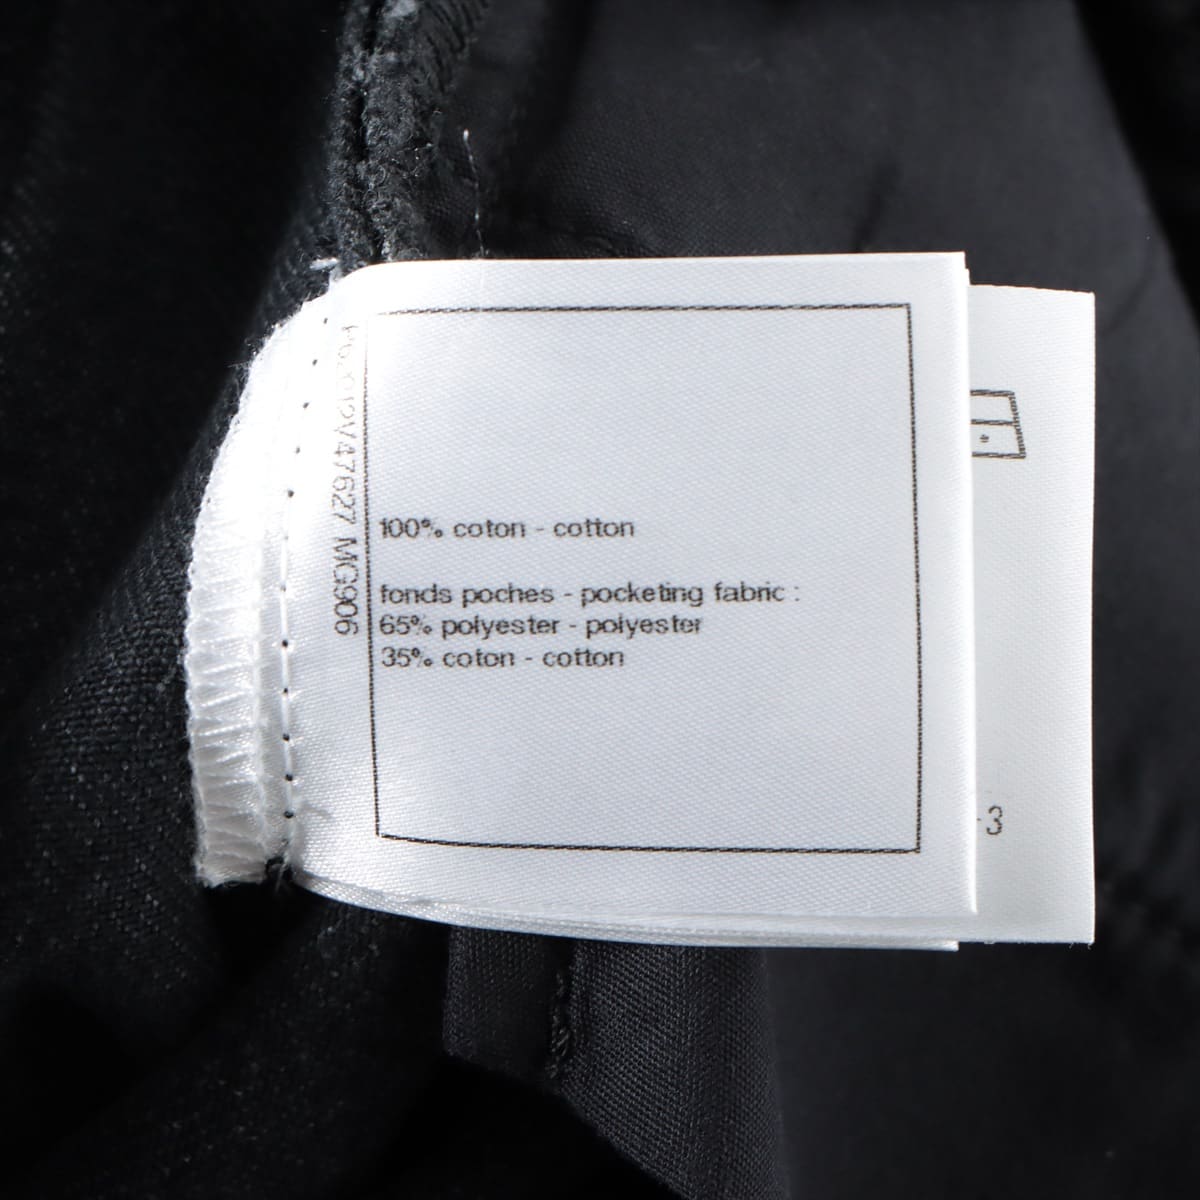 Chanel Coco Button P62 Cotton Denim pants 34 Ladies' Black